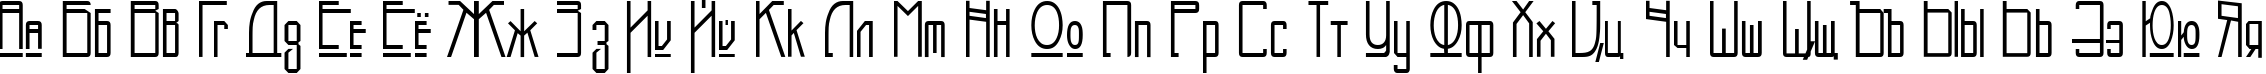 Пример написания русского алфавита шрифтом NewDeli